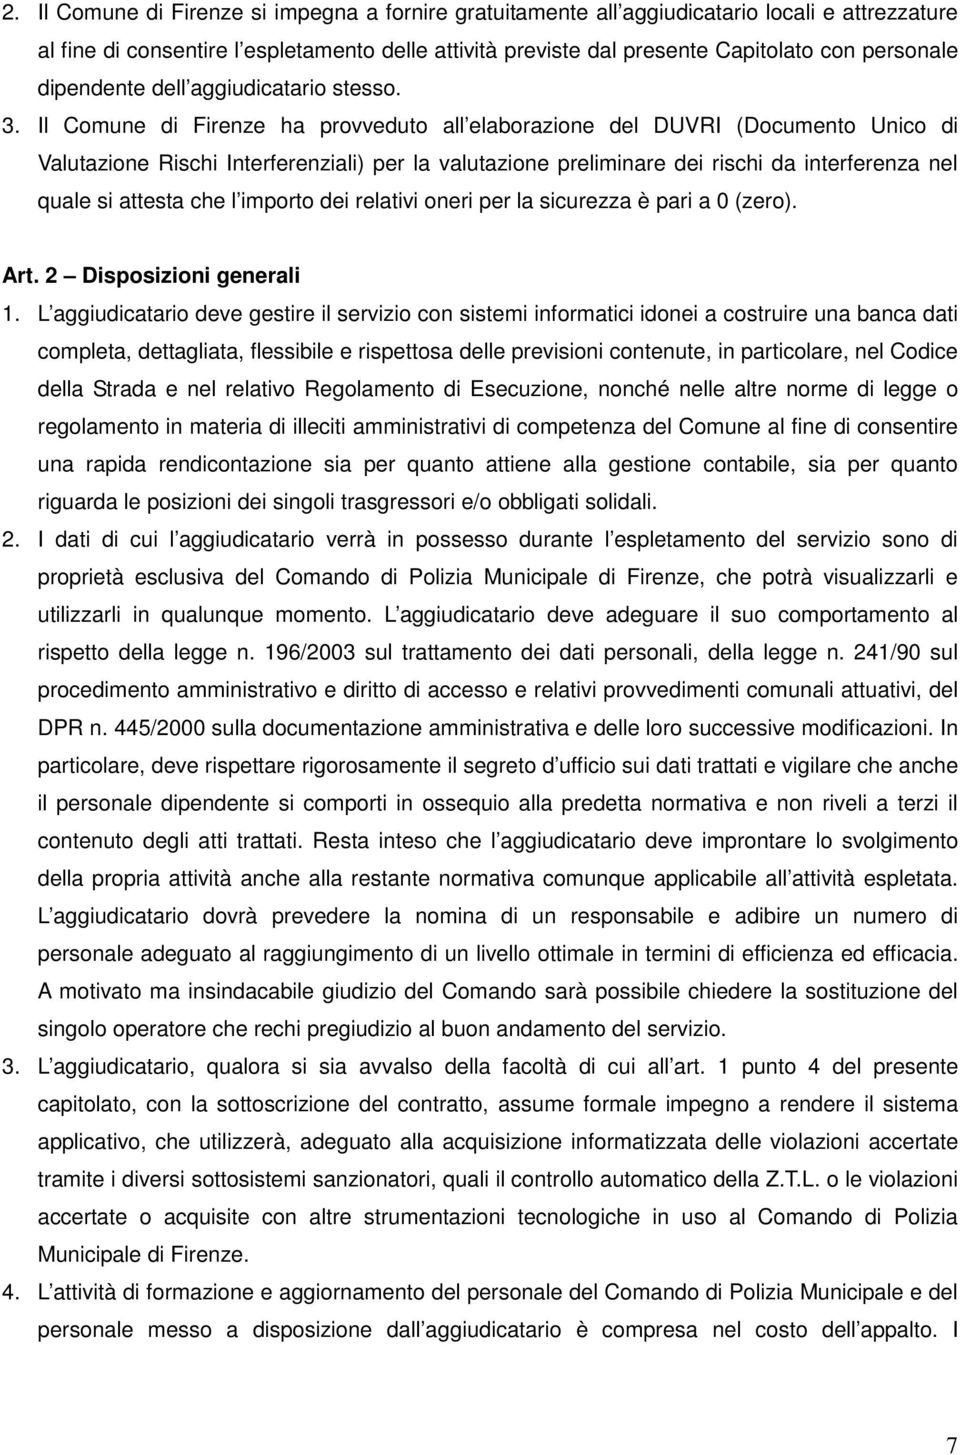 Il Comune di Firenze ha provveduto all elaborazione del DUVRI (Documento Unico di Valutazione Rischi Interferenziali) per la valutazione preliminare dei rischi da interferenza nel quale si attesta